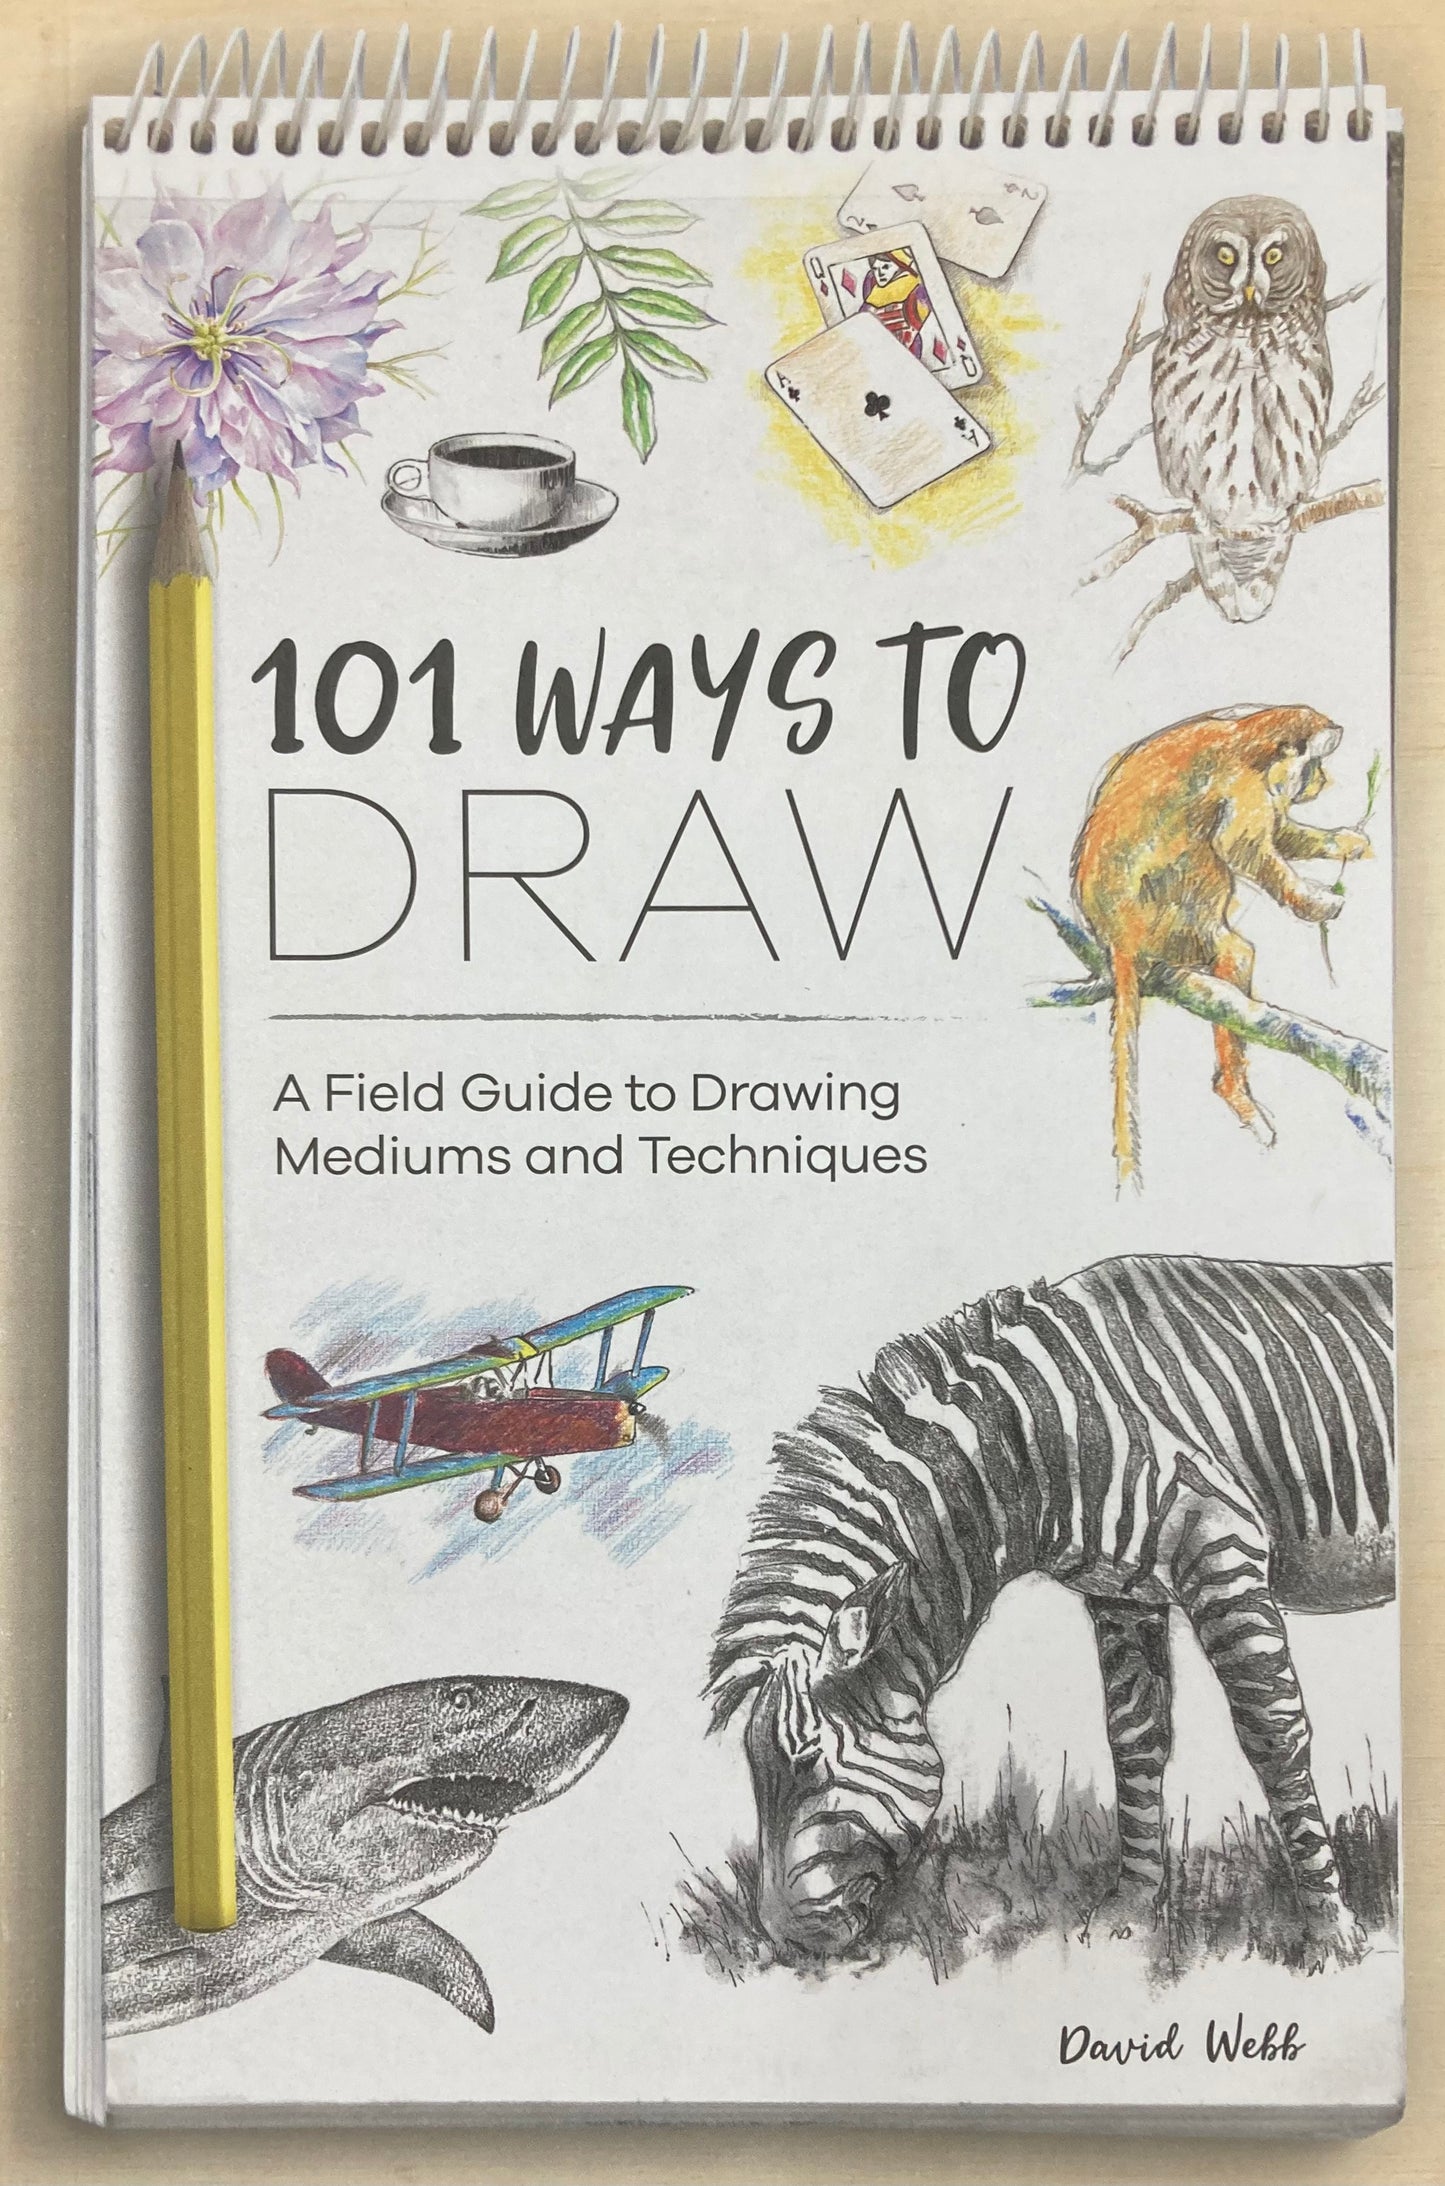 101 Ways to Draw by David Webb